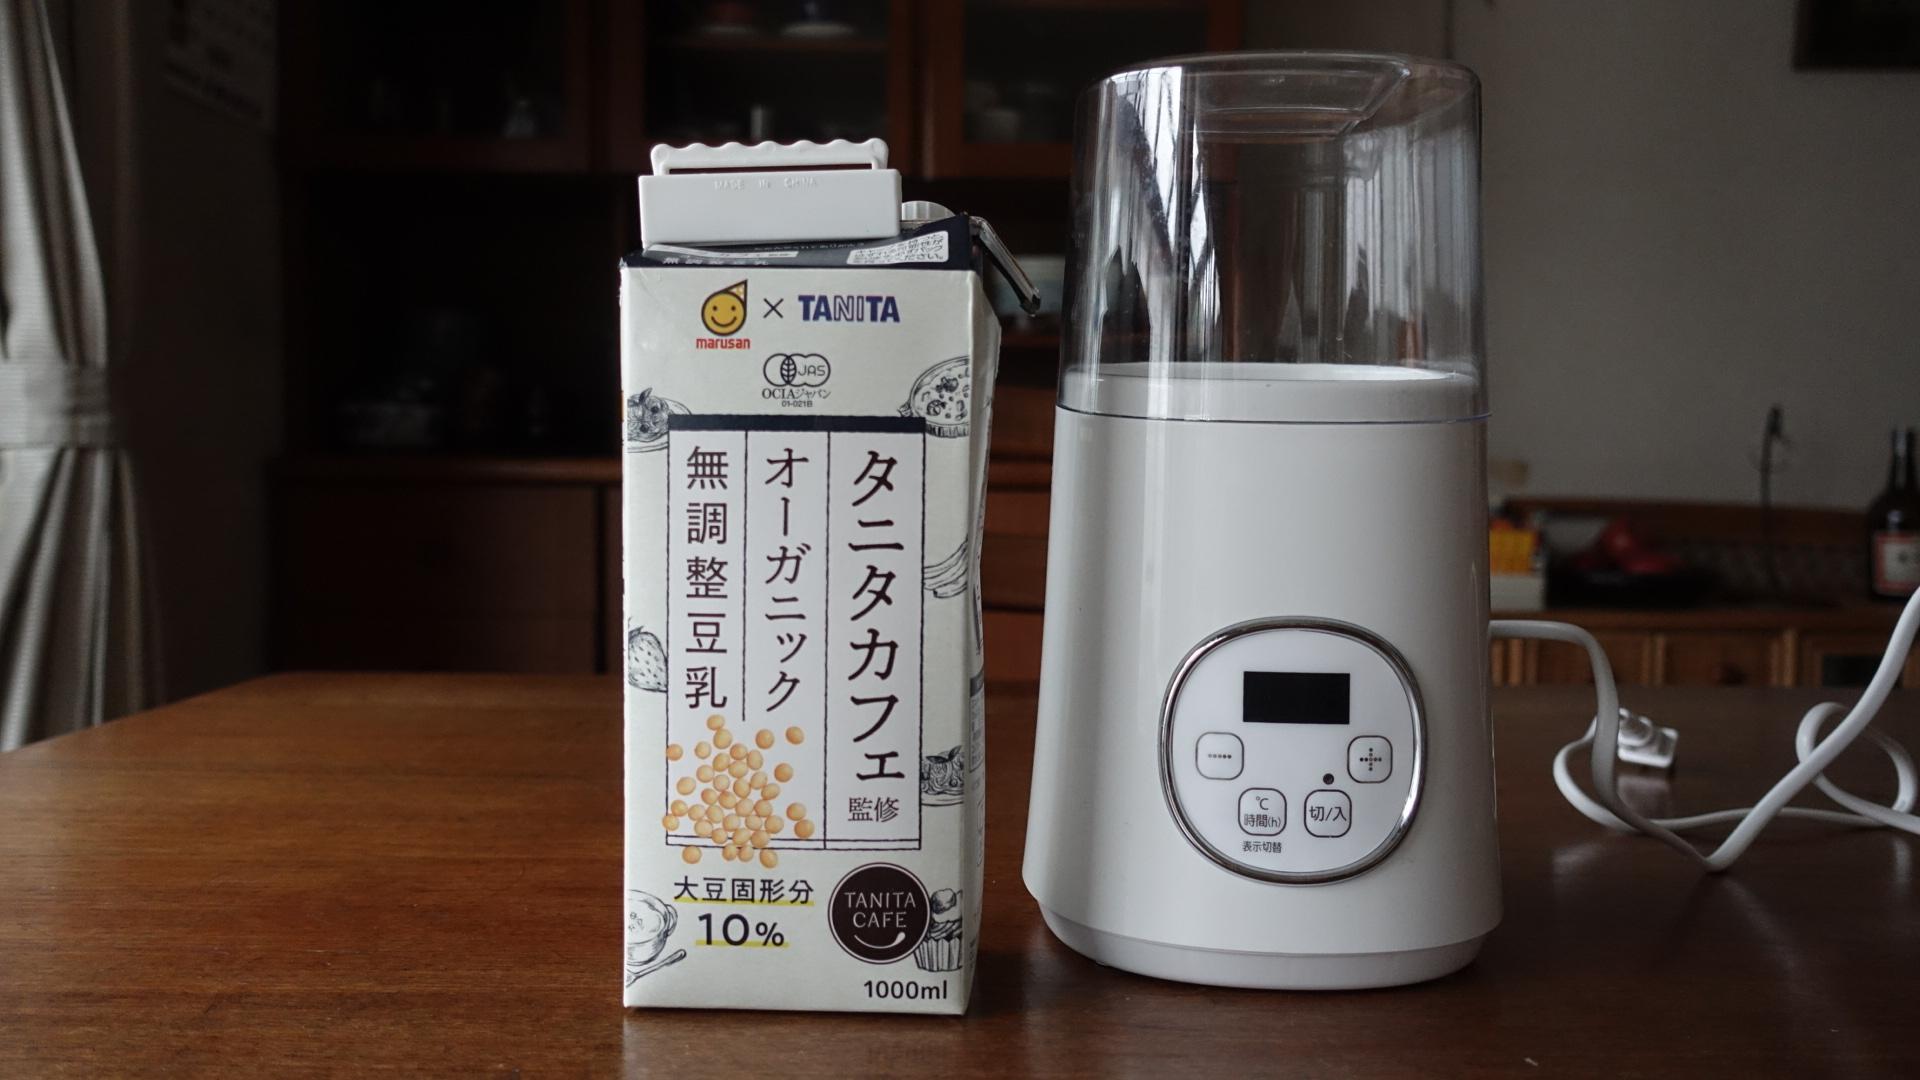 毎日でも食べたいから、豆乳ヨーグルトは家でつくる今日のライフハックツール  ライフハッカー・ジャパン